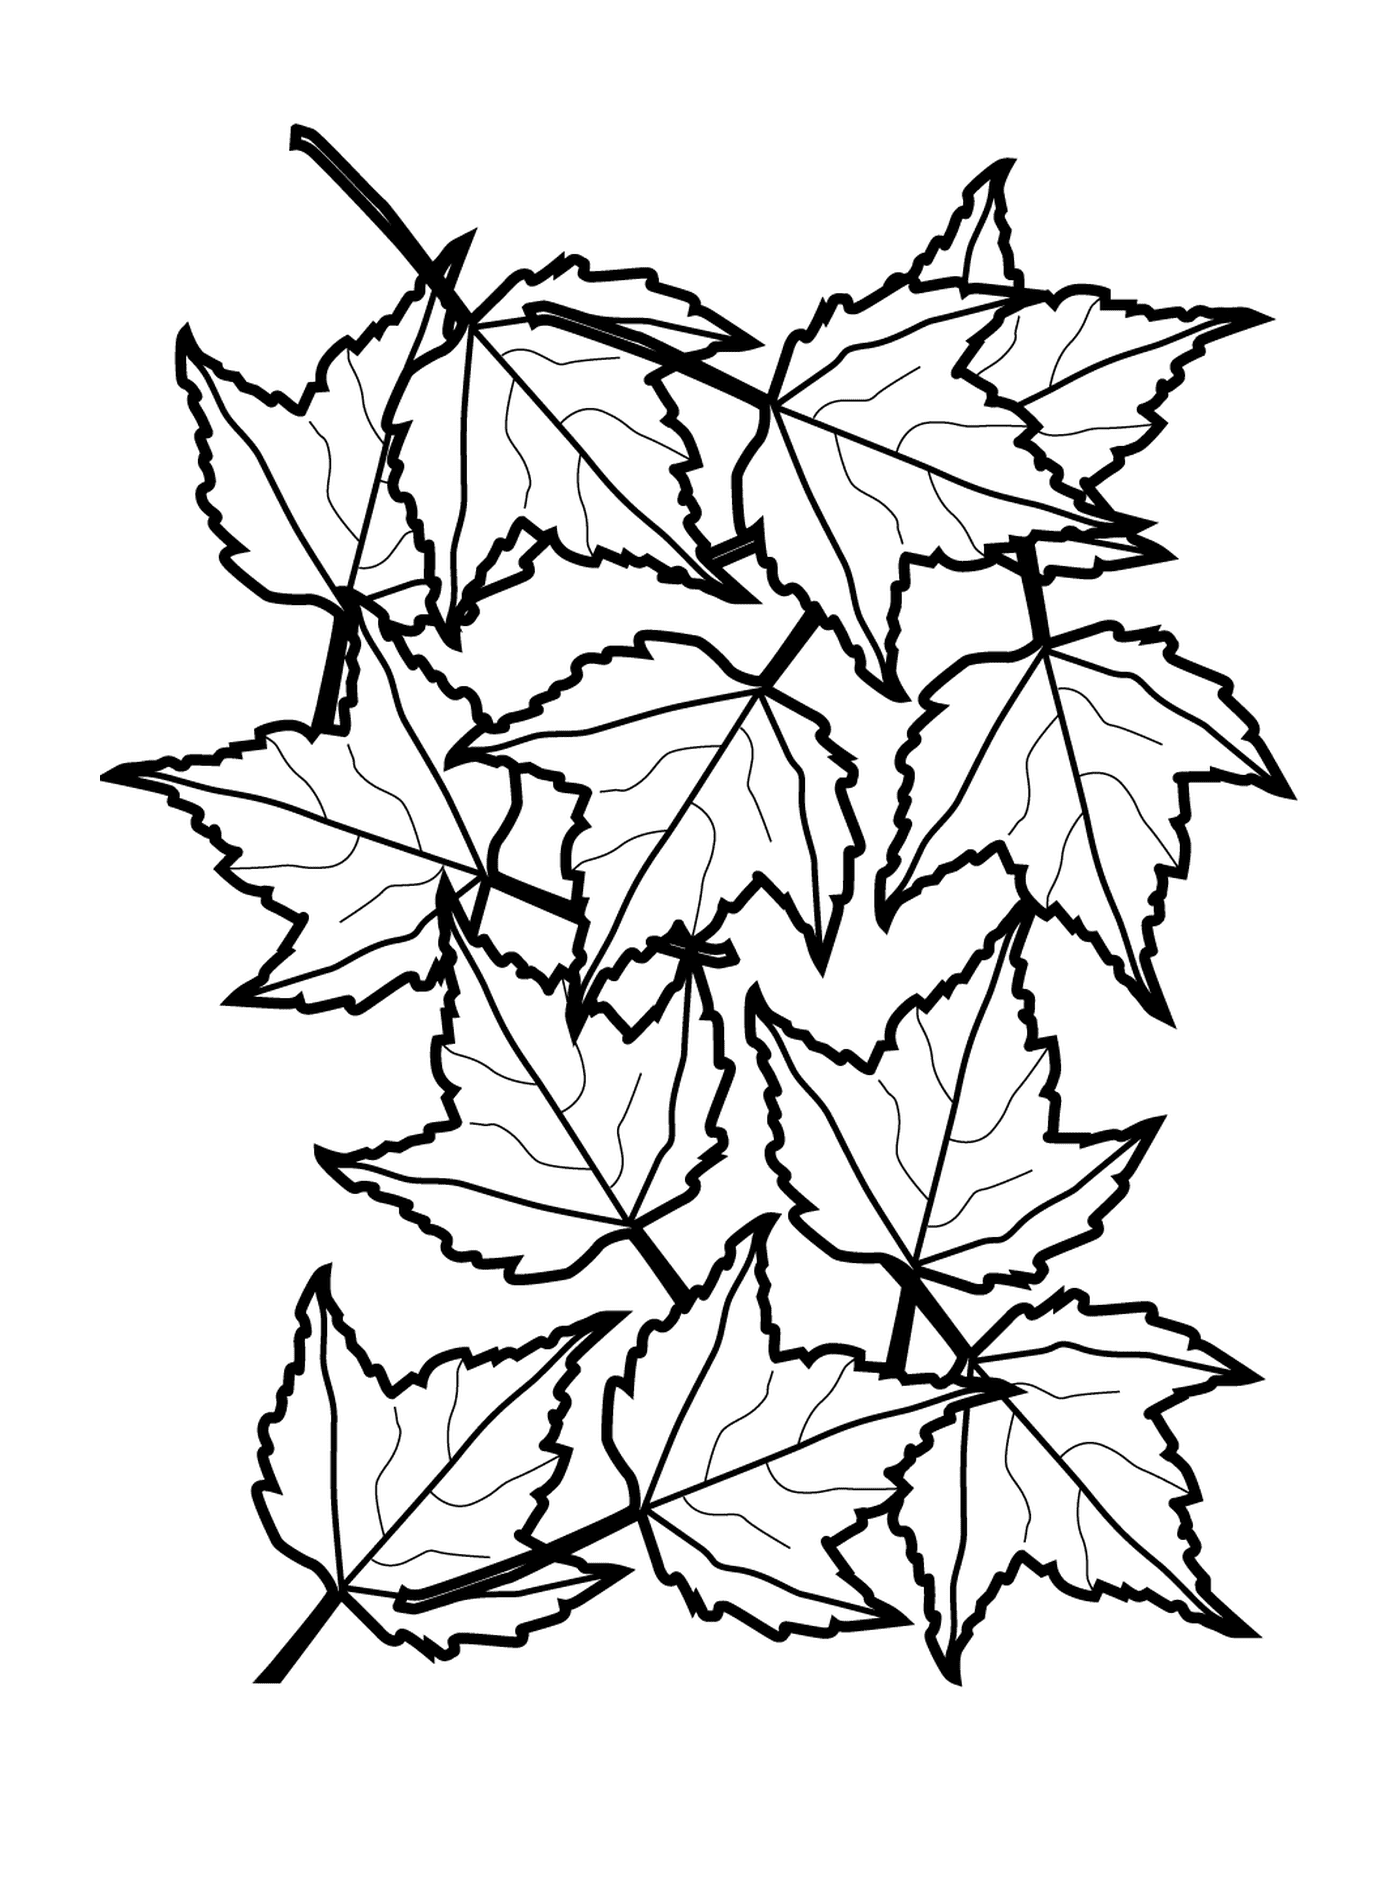  Линия множества осенних листьев 